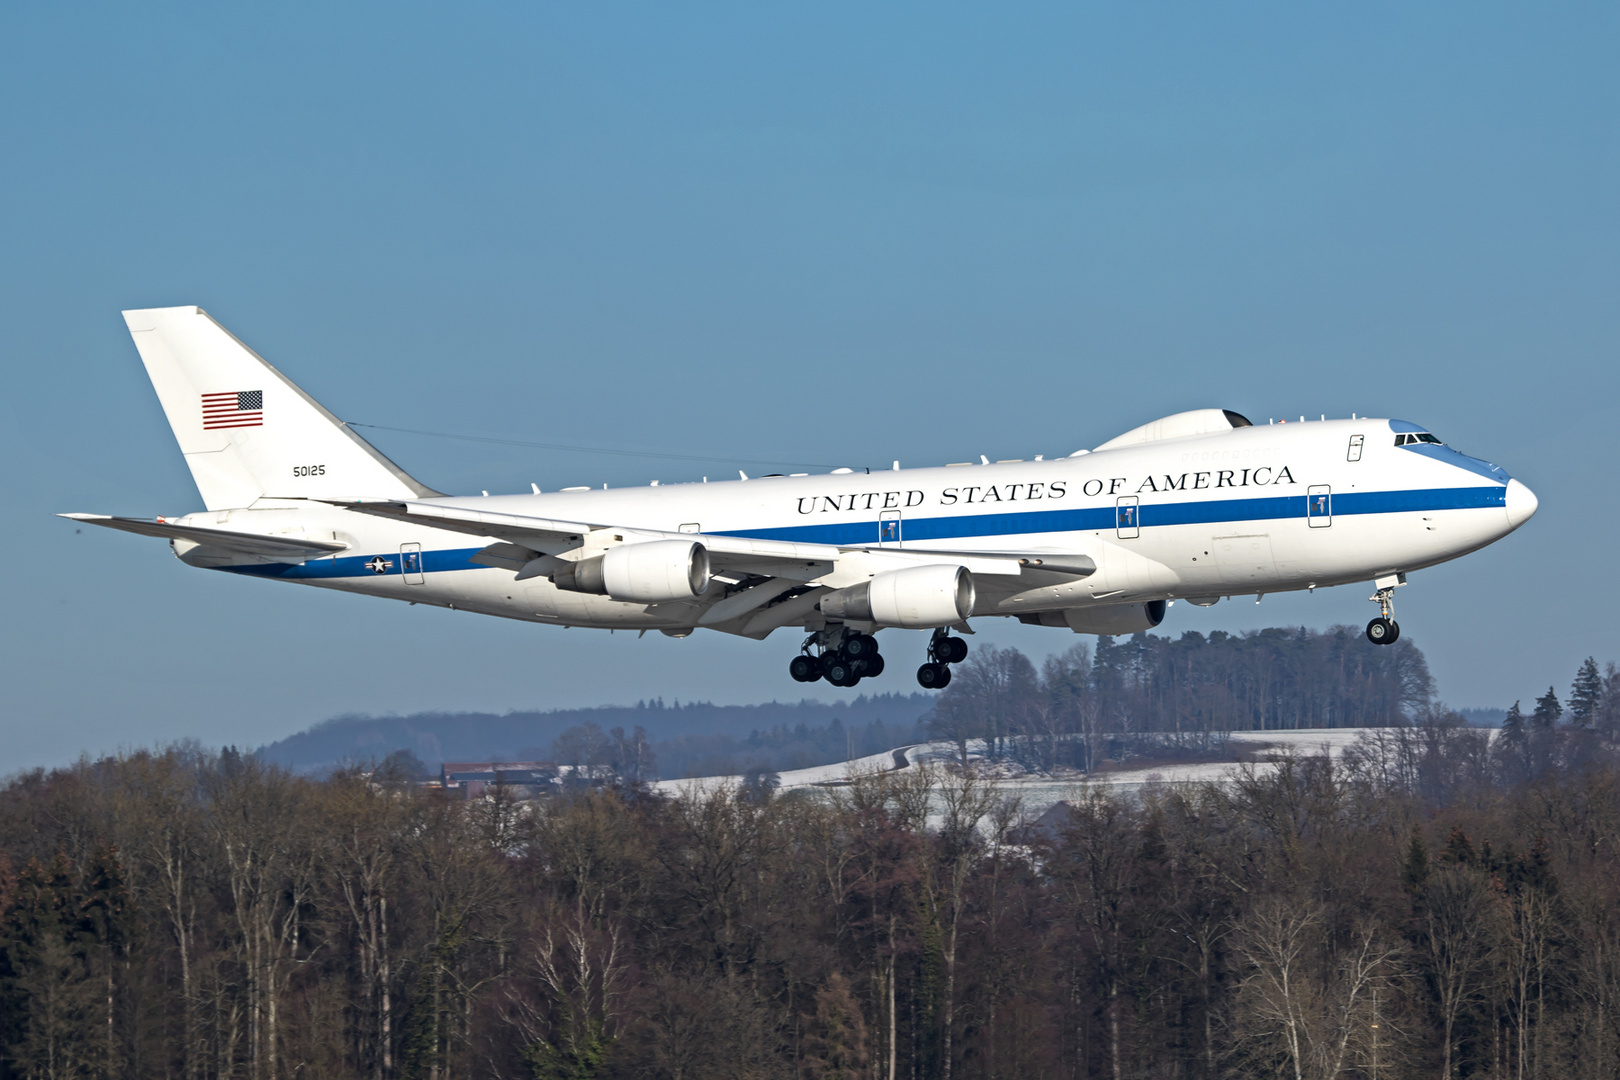 USAF Boeing E-4B, 747-200, 75-0125, "Nightwatch", Landung auf Rwy 14 ZRH